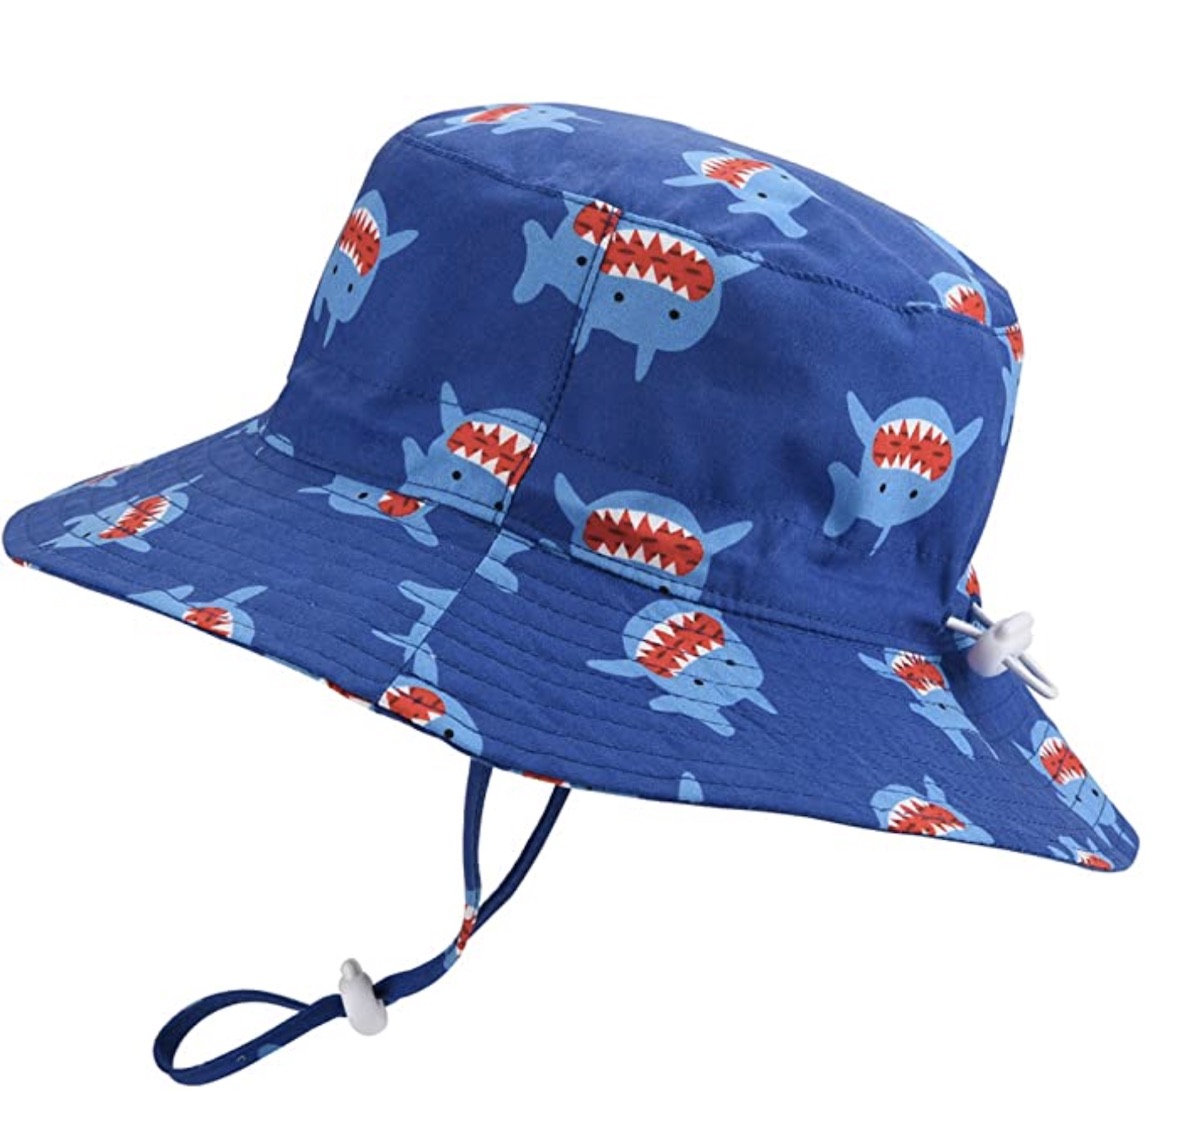 Baby Sun Hat Adjustable - Outdoor Toddler Swim Beach Pool Hat Kids UPF 50+ Wide Brim Chin Strap Summer Play Hat